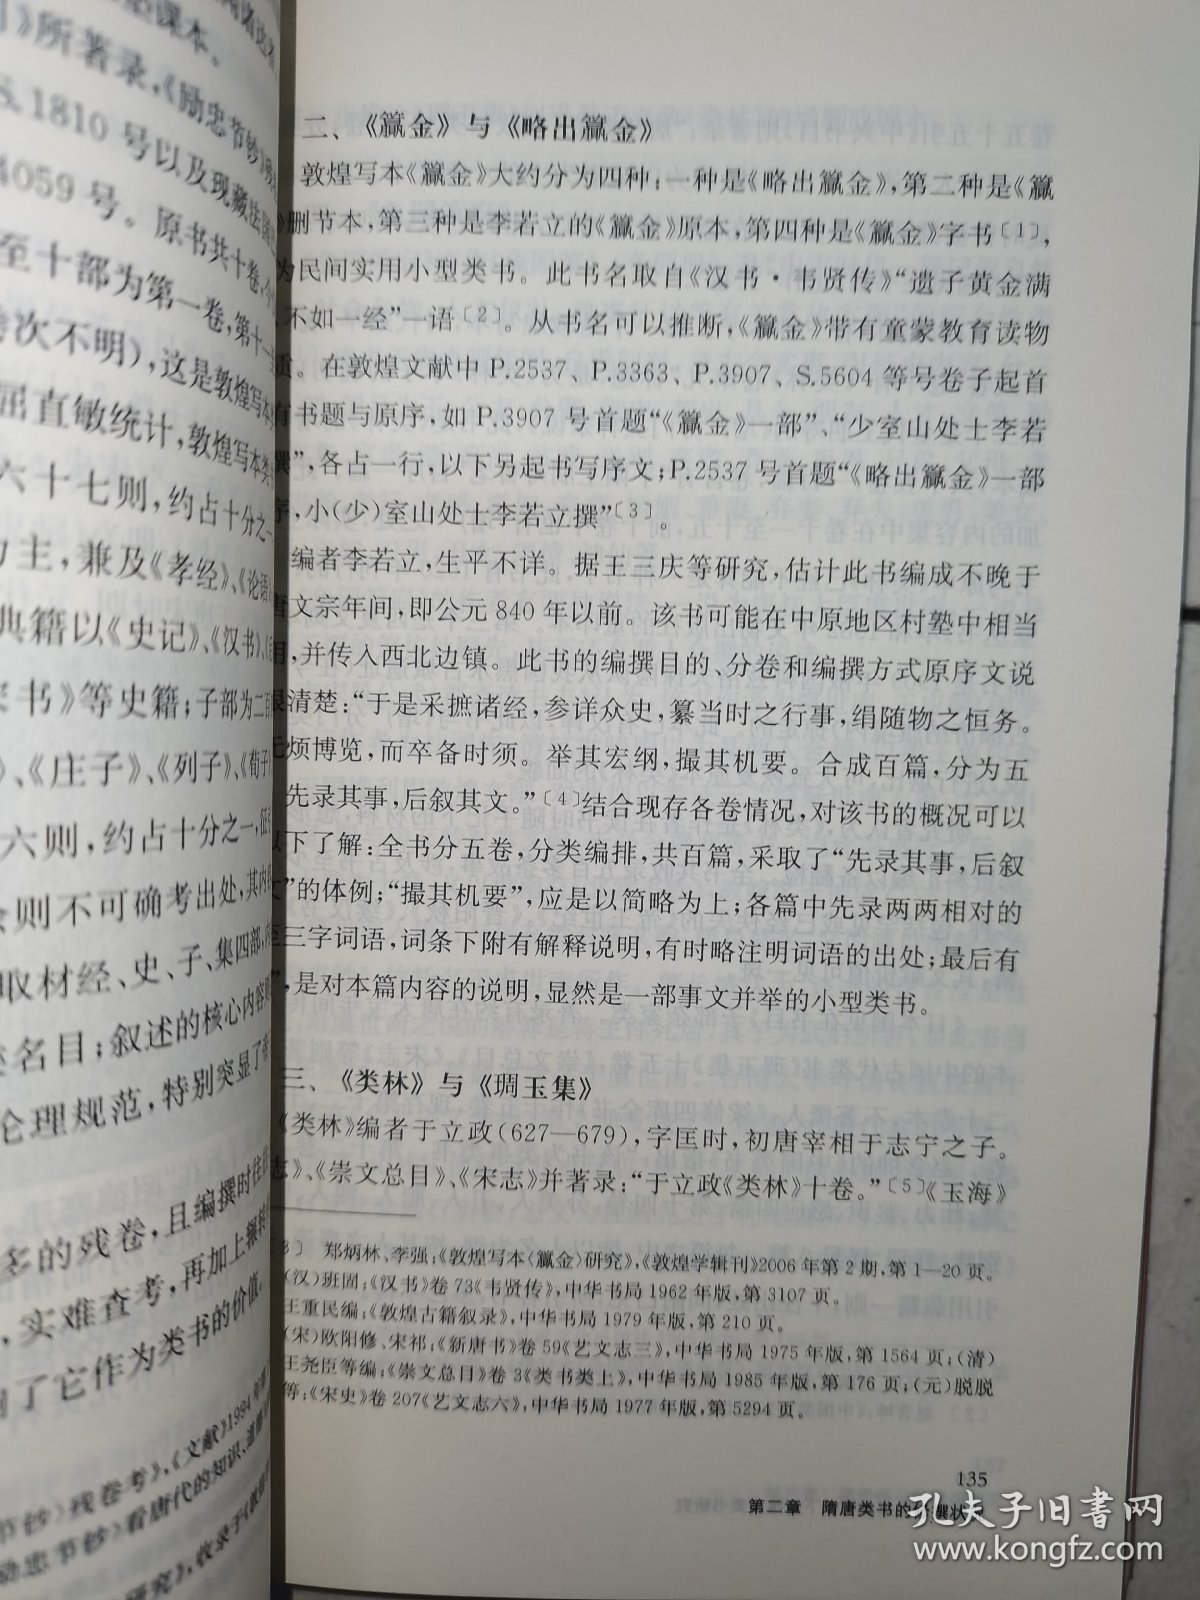 中国古代类书史视域下的隋唐类书研究